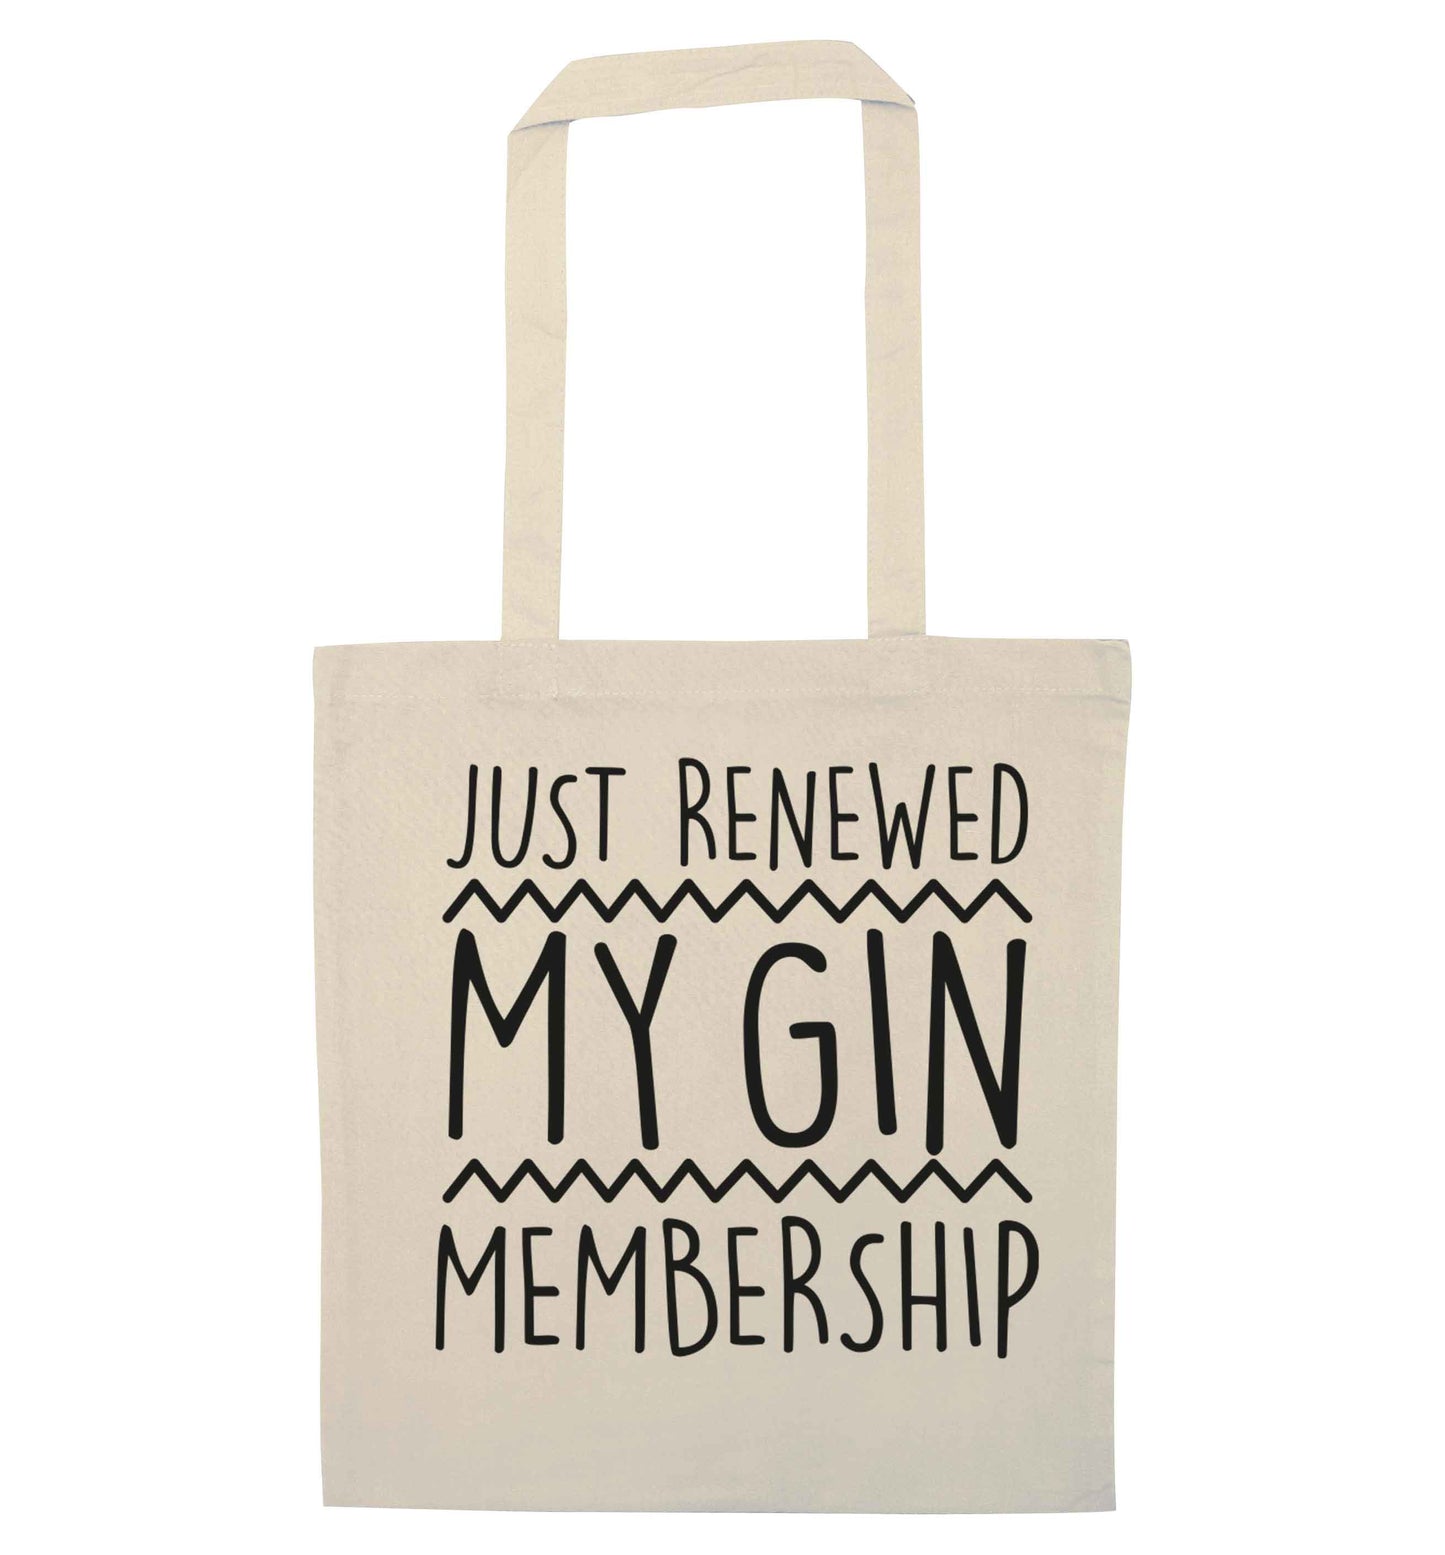 Just renewed my gin membership natural tote bag